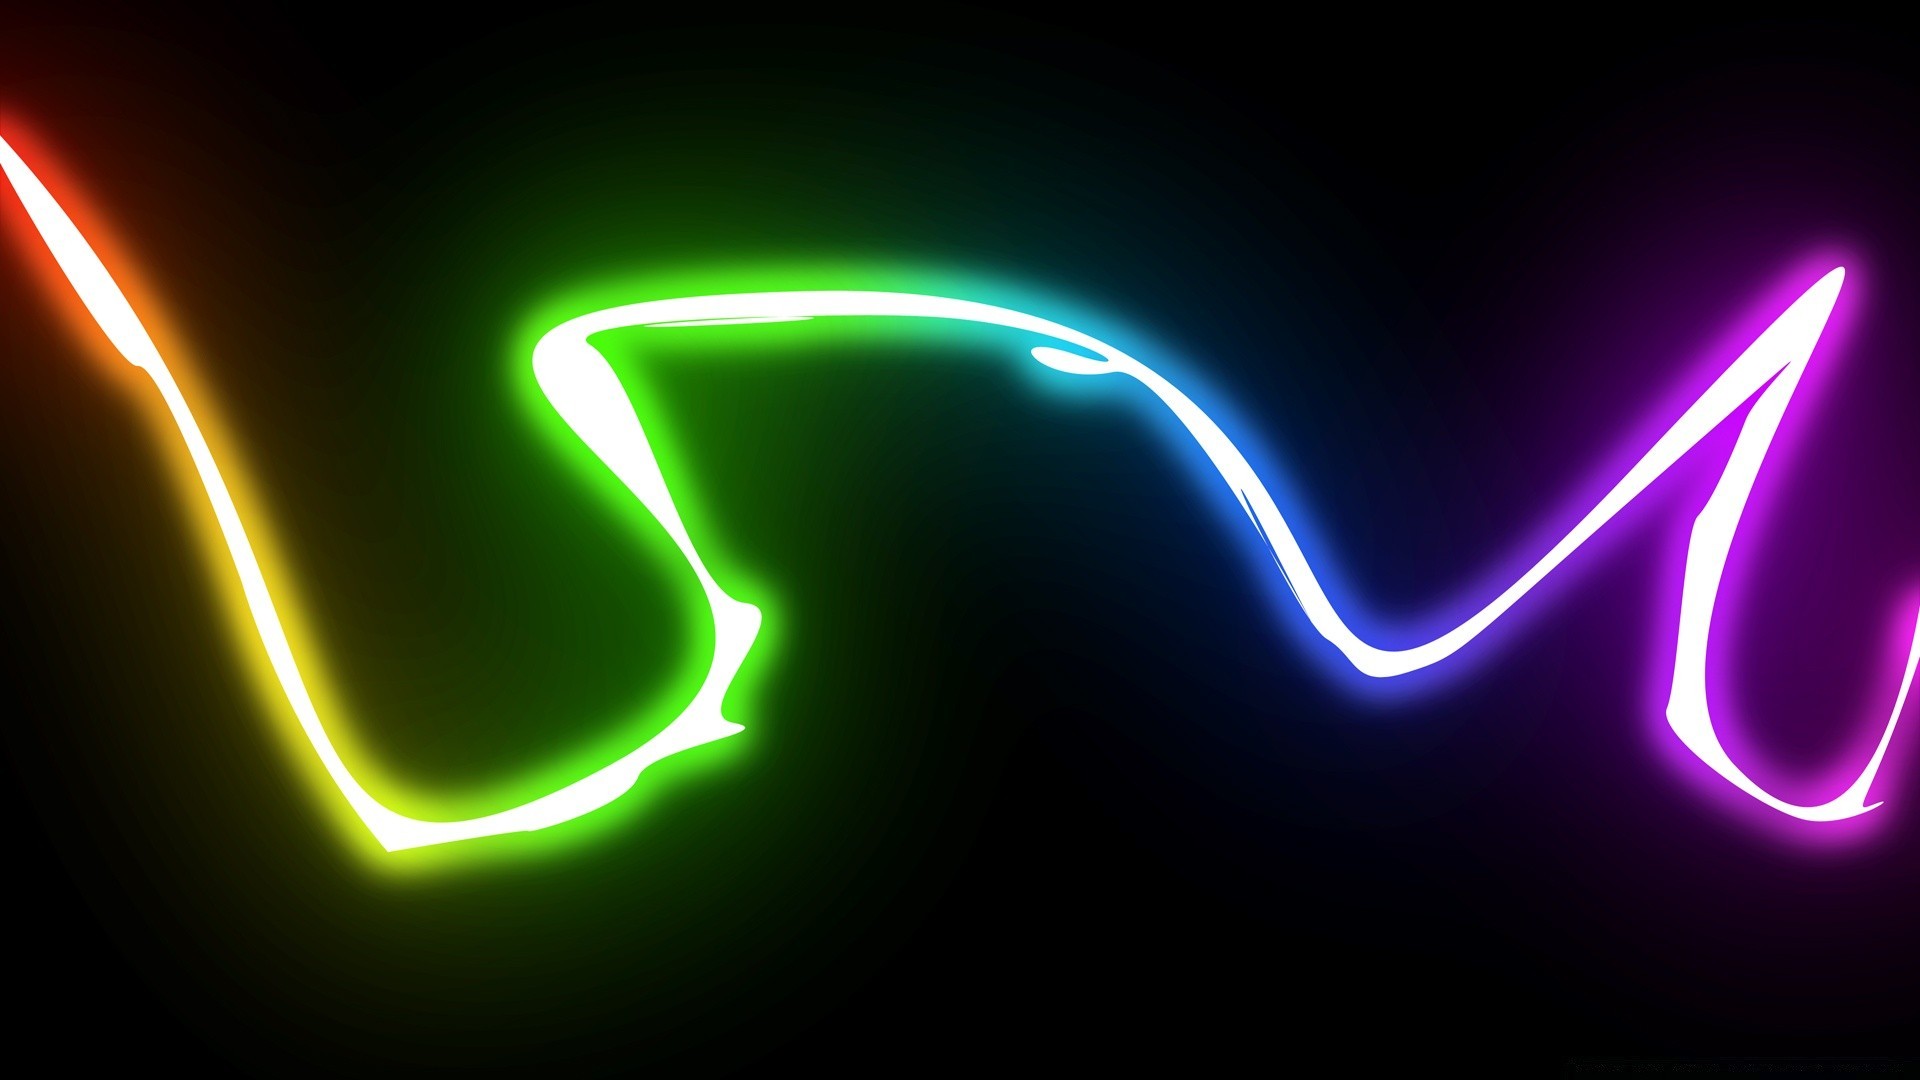 радуга молния яркий аннотация светит темный дизайн рождество иллюстрация искусство тандерболт свет электричество неон игристое график вектор люминесценция формы алфавит